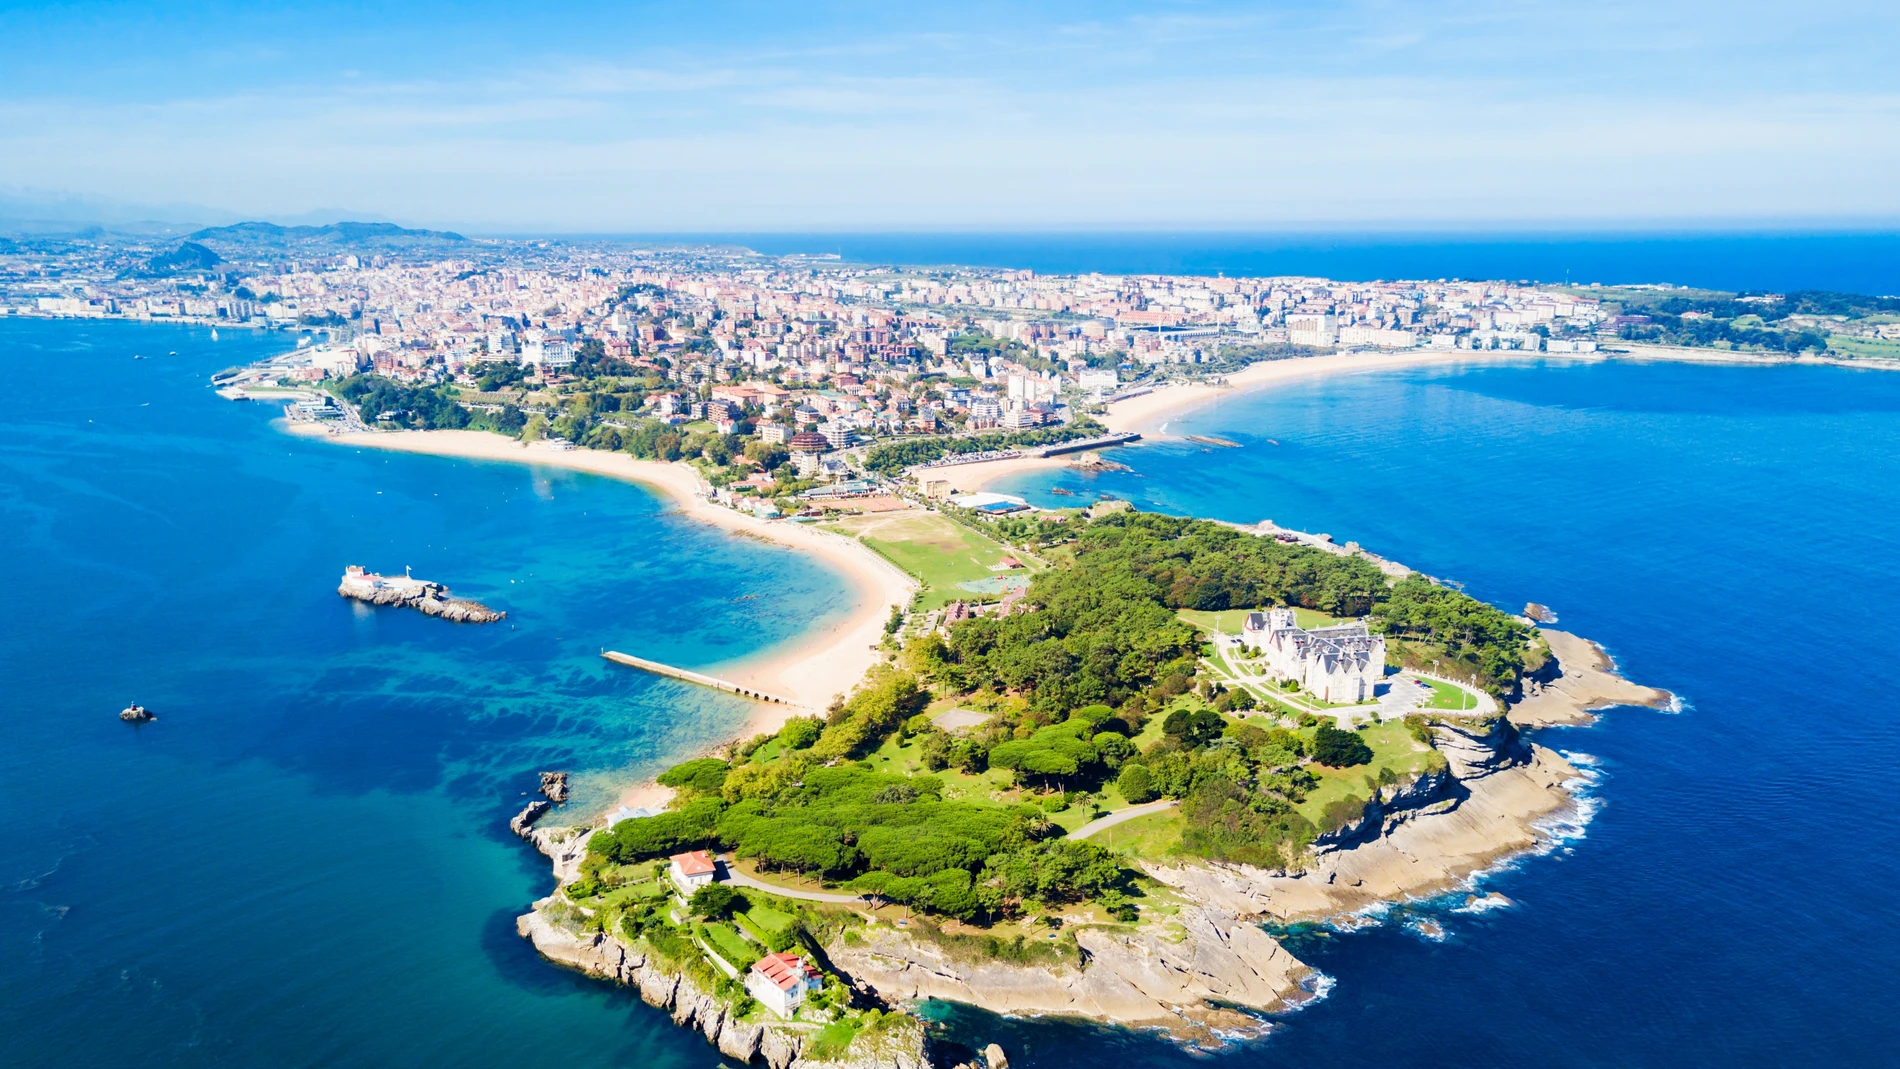 Vista panorámica de la ciudad de Santander